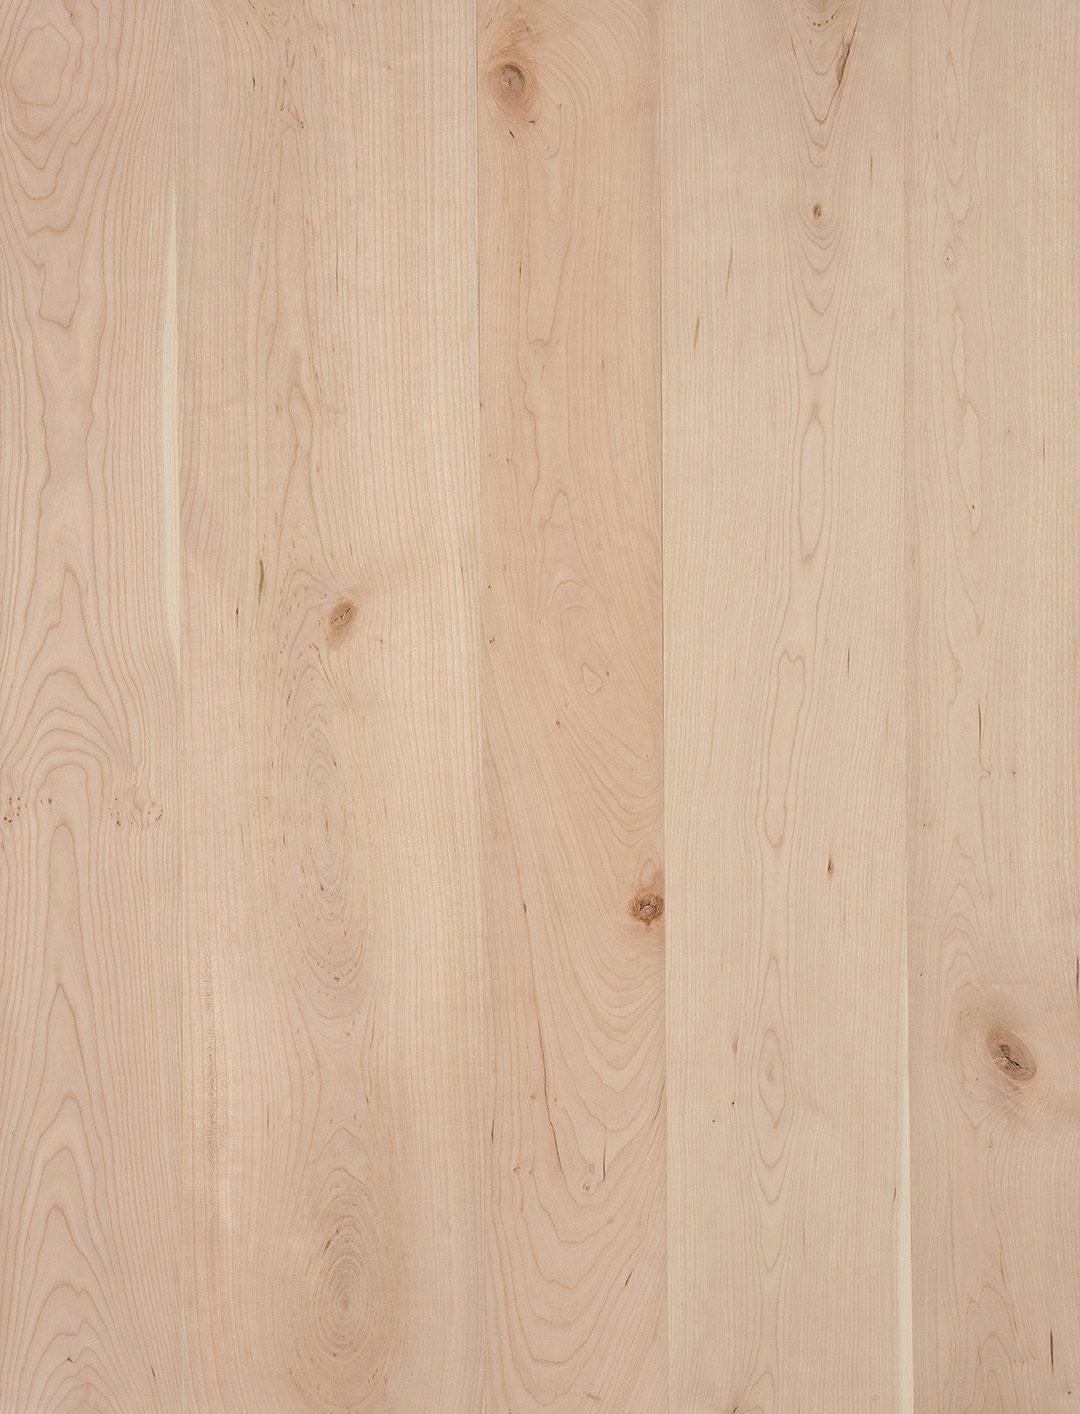 Maple Vs Cherry Hardwood Flooring, Unfinished Cherry Hardwood Flooring